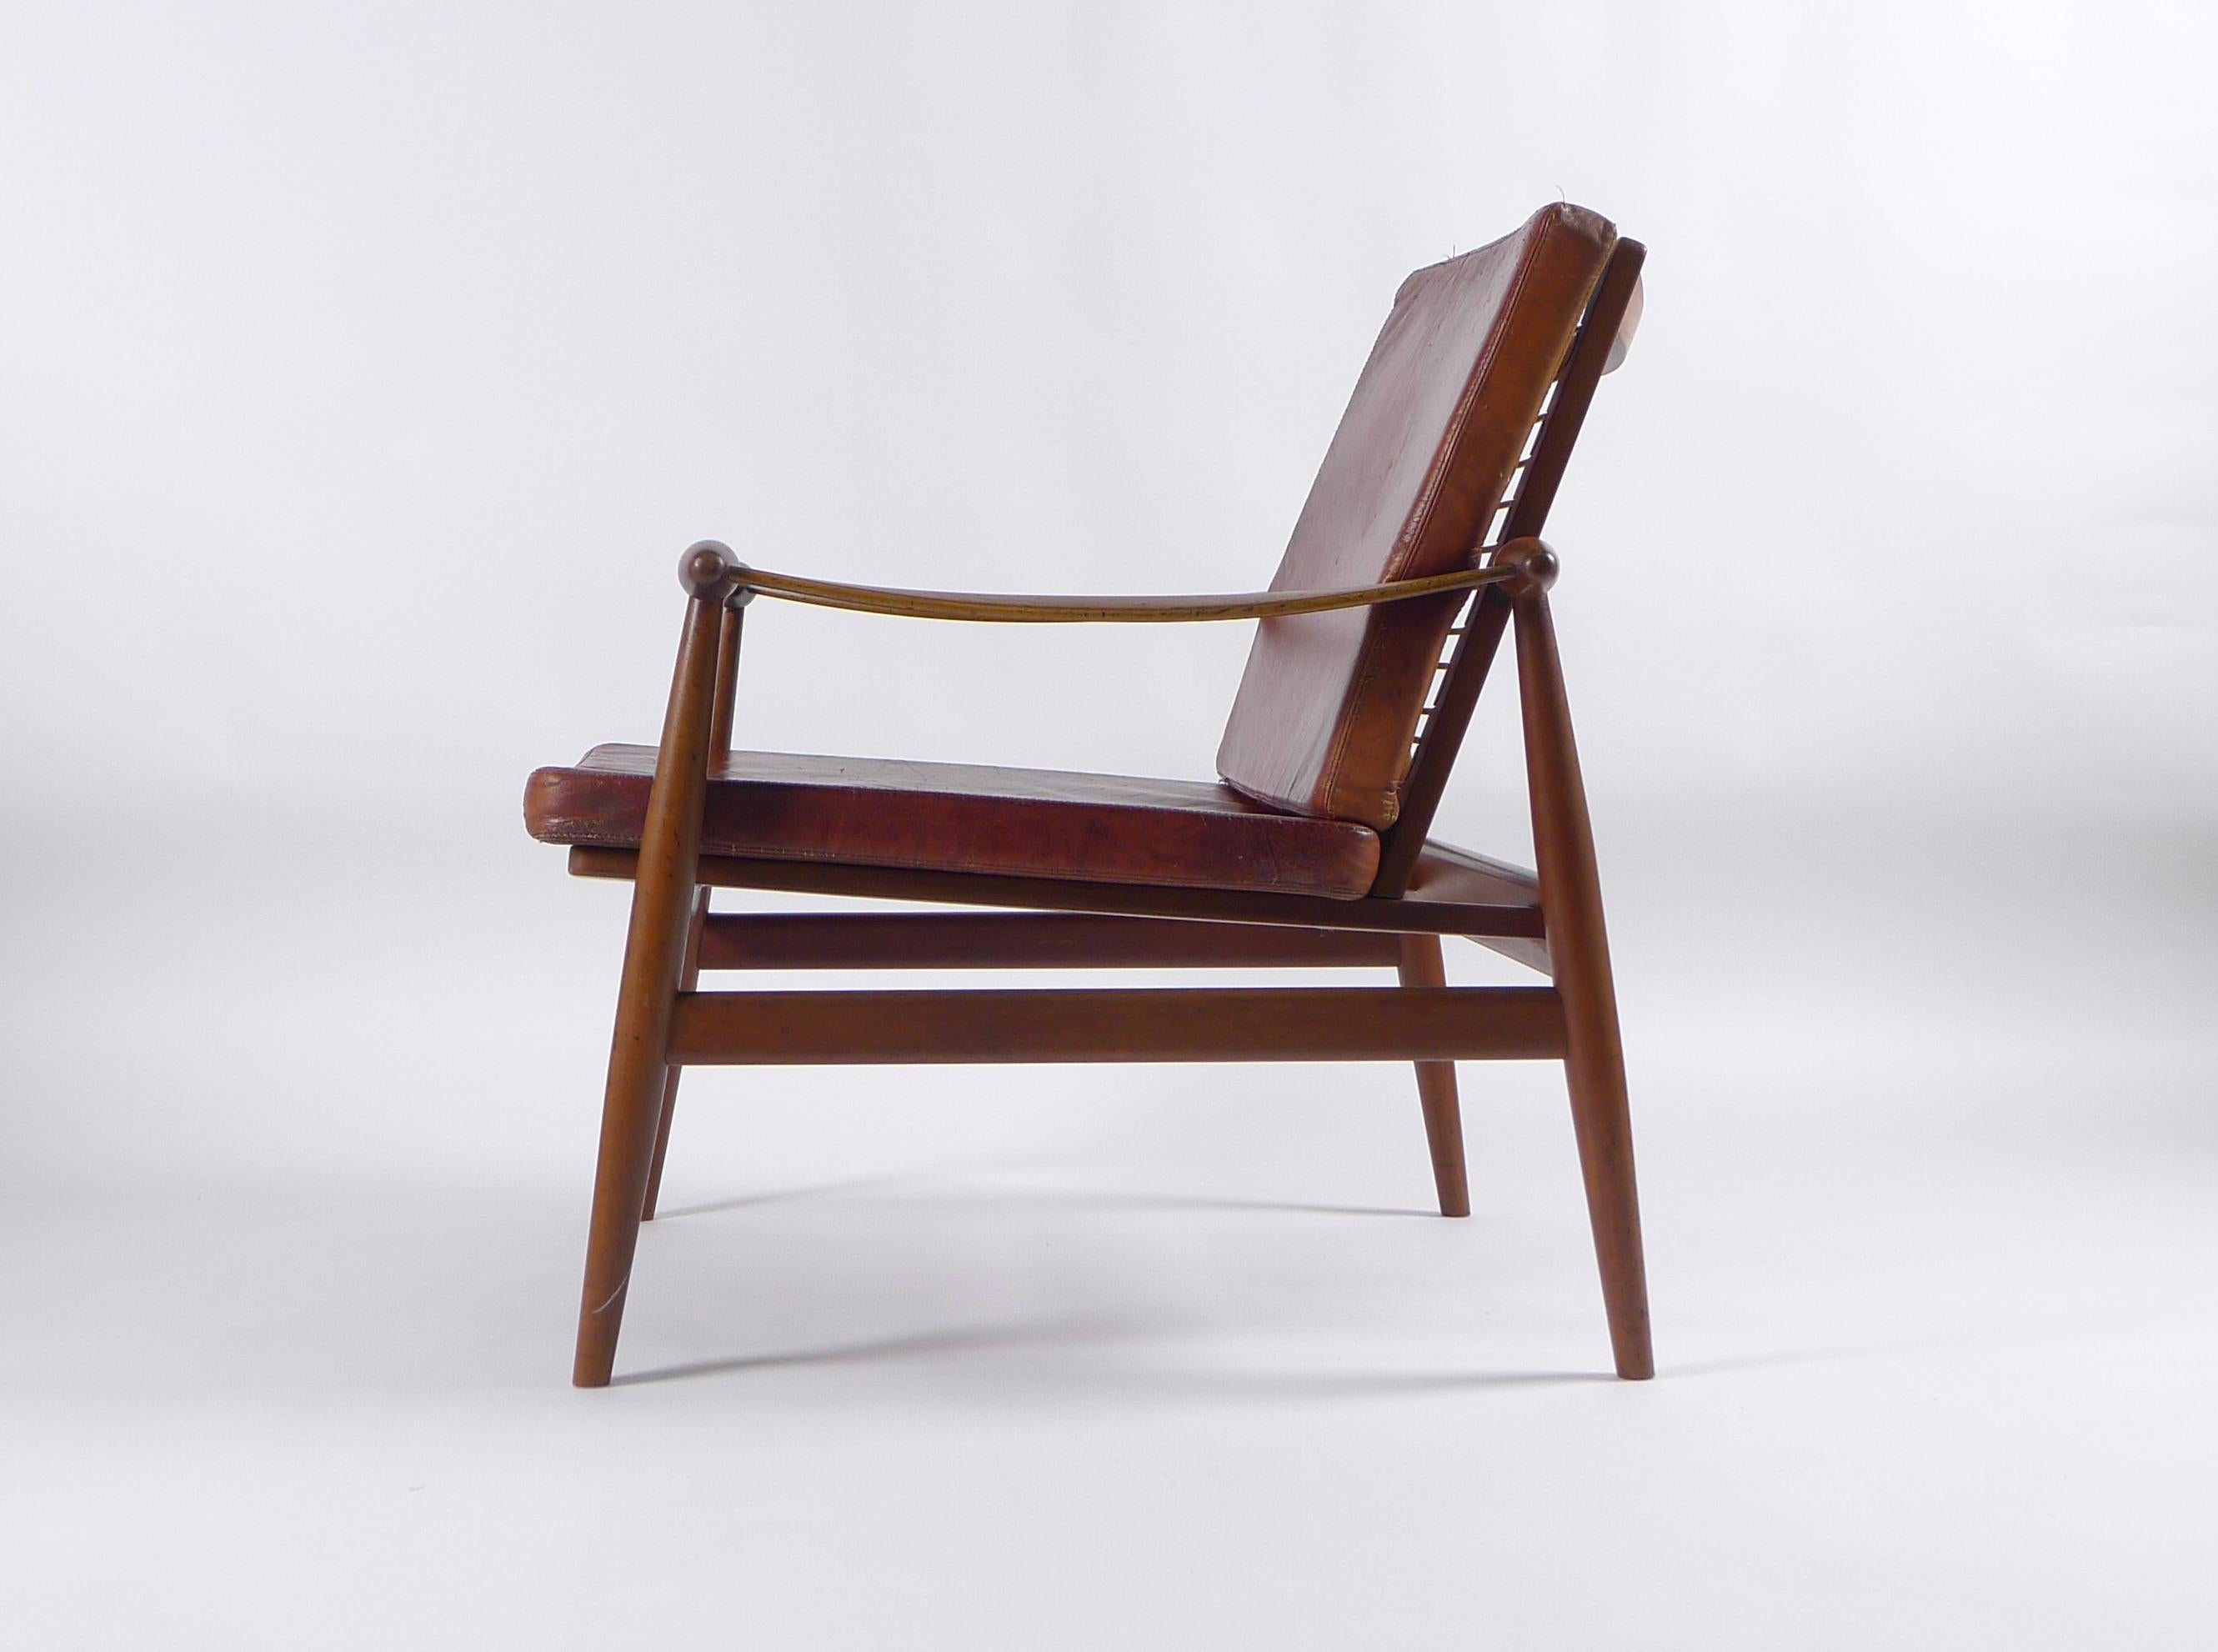 Scandinavian Modern Finn Juhl Spade Chair, Model Fd133, 1950s, Produced by France & Son, with Label